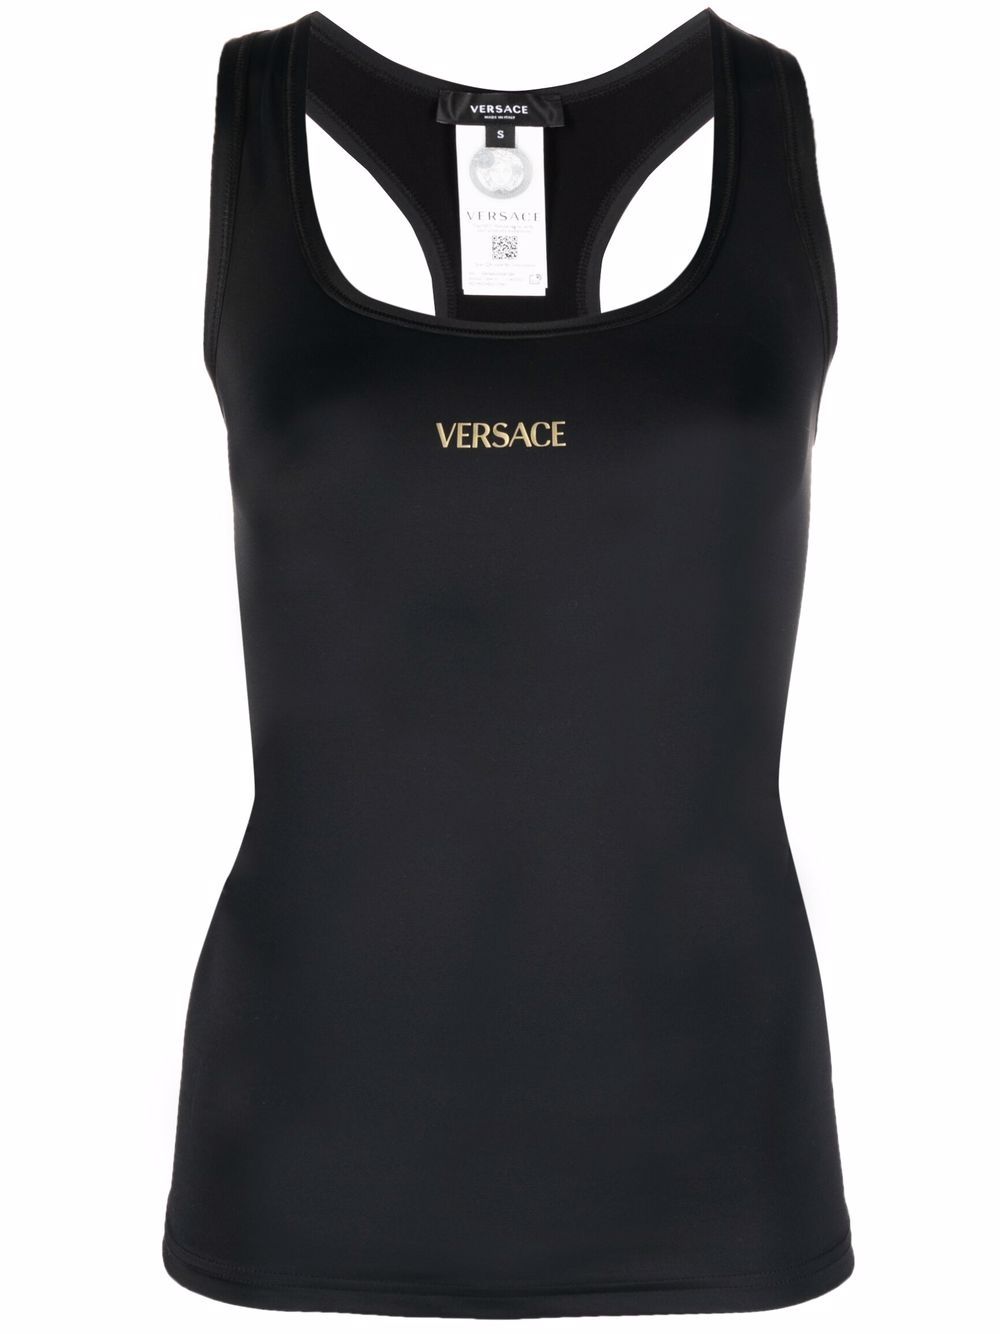 Versace Top mit Logo - Schwarz von Versace